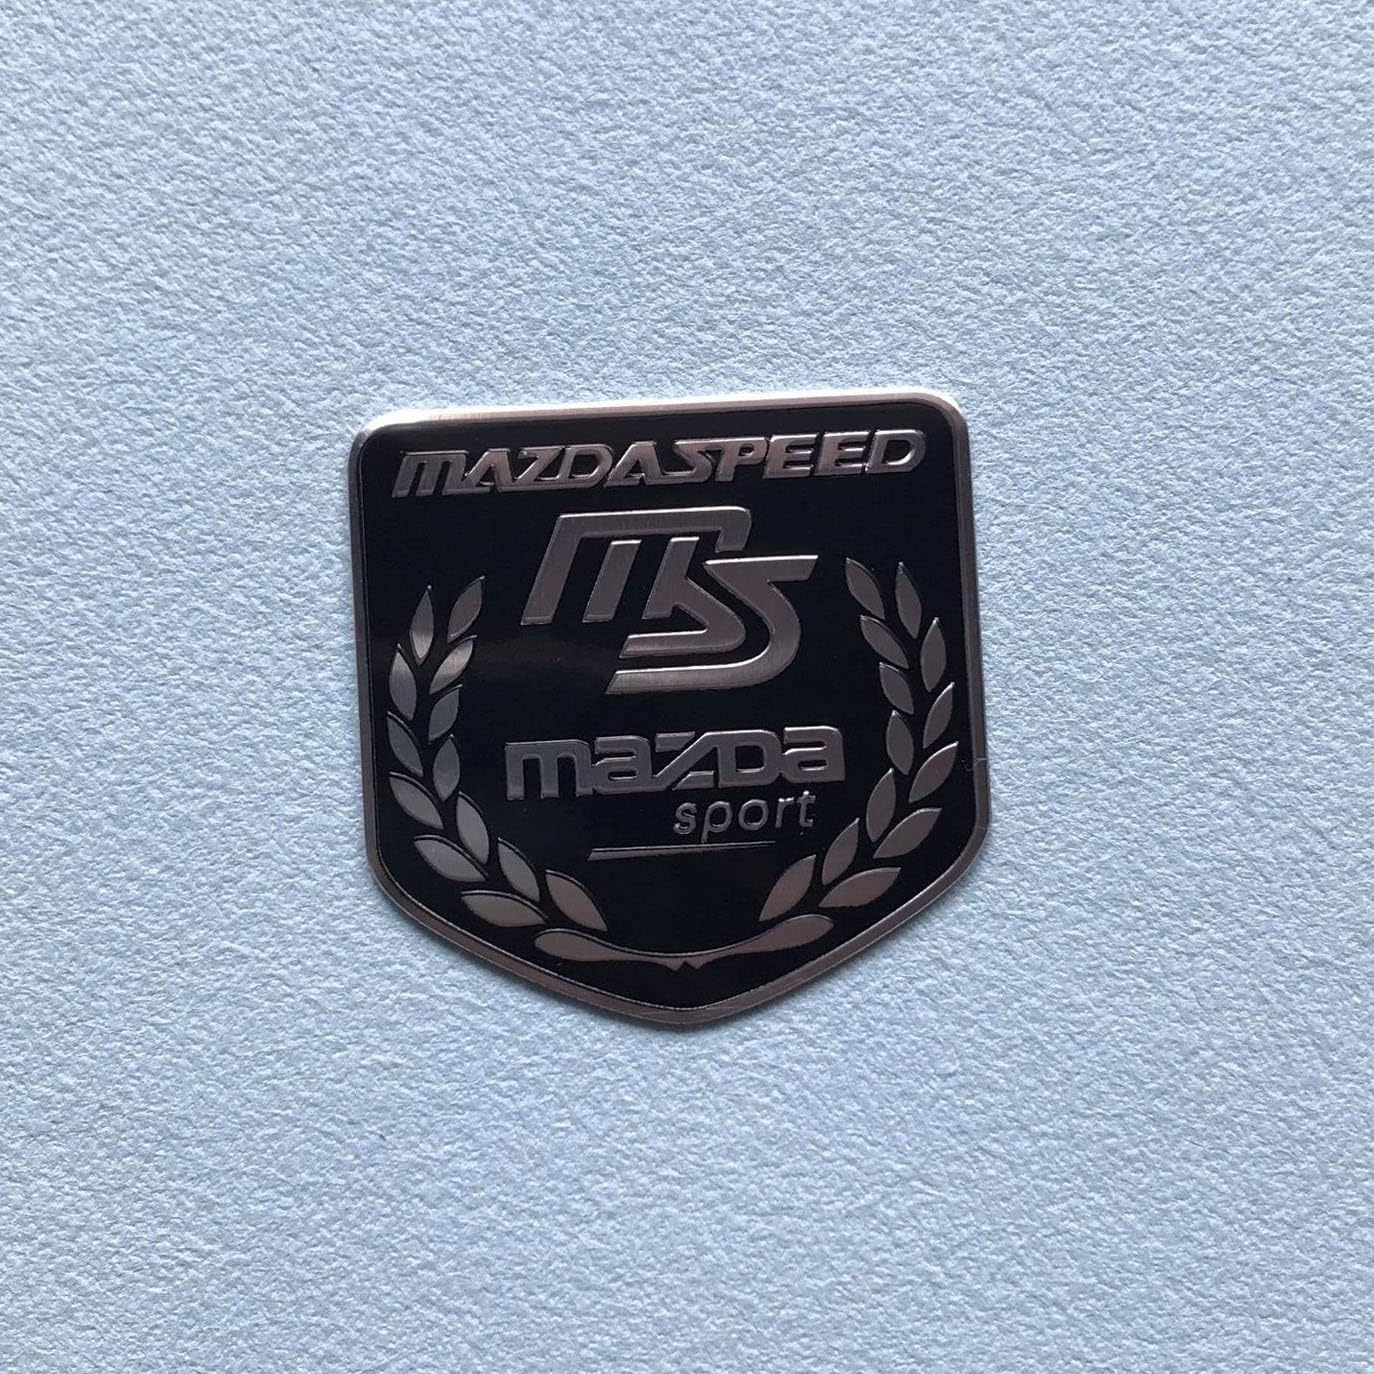 Auto Emblem Aufkleber für Mazda Speed Mazda MS, Buchstaben Emblem Aufkleber, Auto Body Abzeichen Sticker, Logo Abzeichen Styling Dekorationsaufkleber Zubehör,G von YOFAB